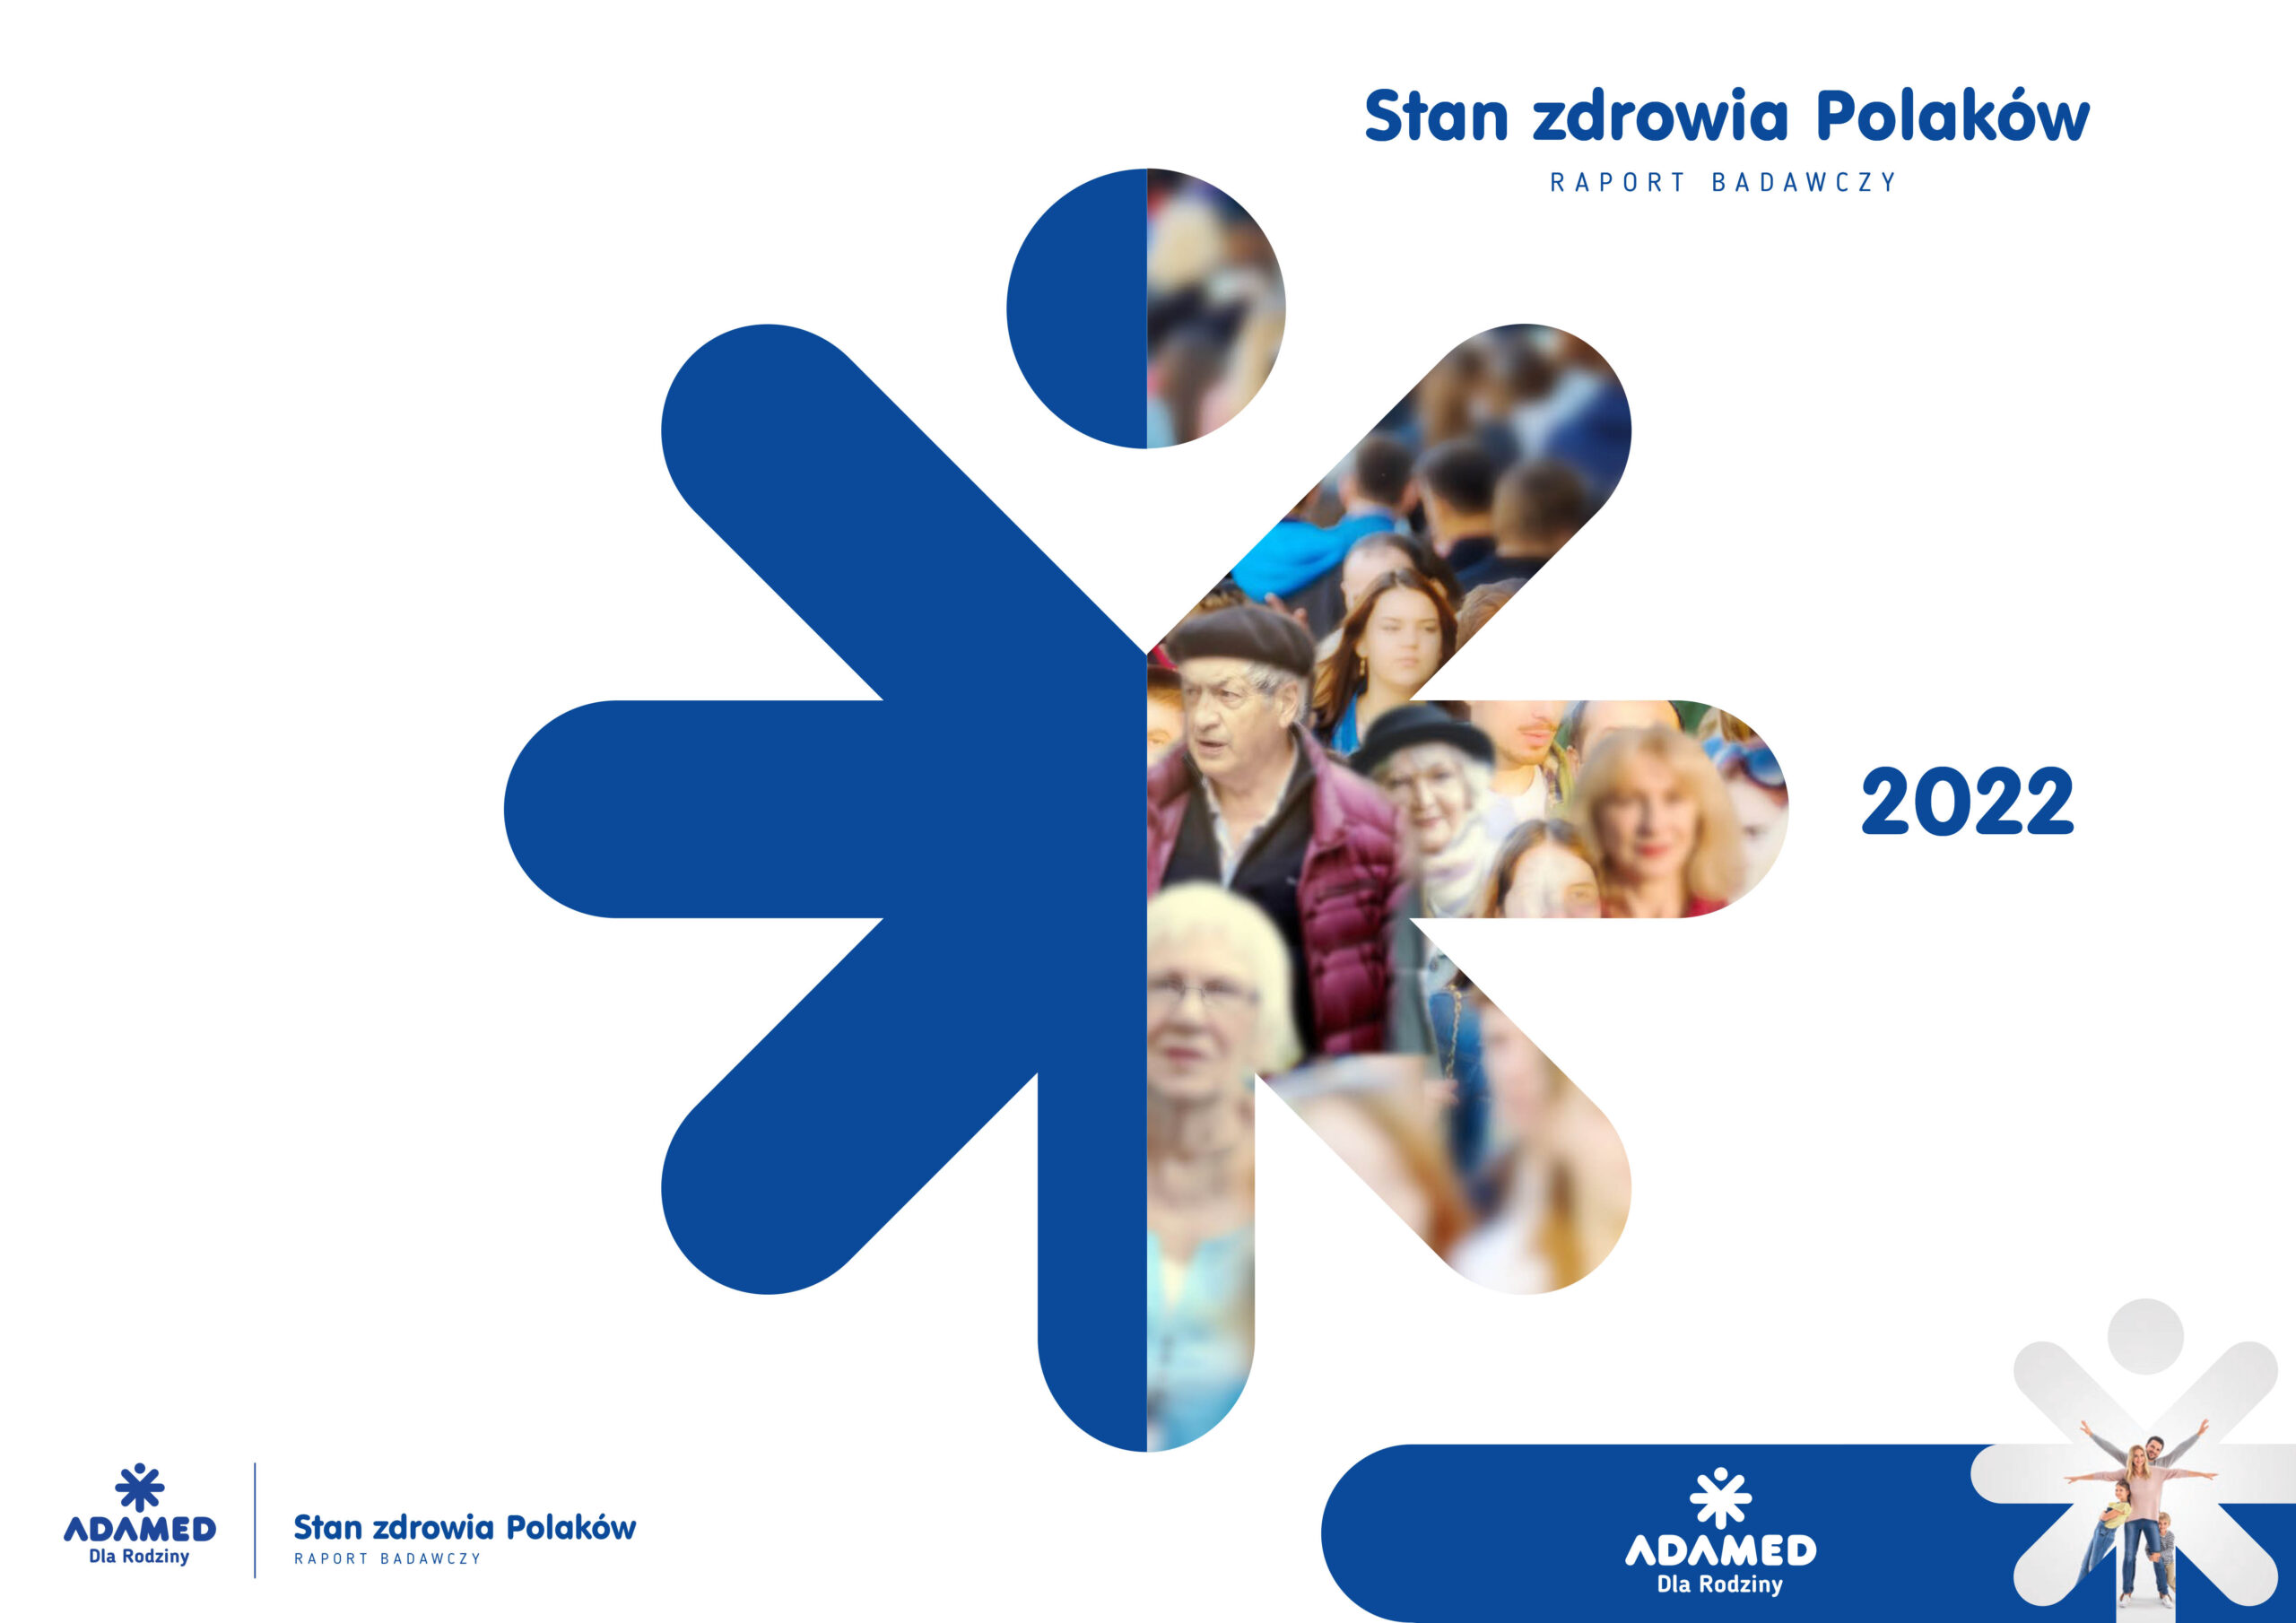 Kampania „Adamed Dla Rodziny” sprawdziła stan zdrowia Polaków